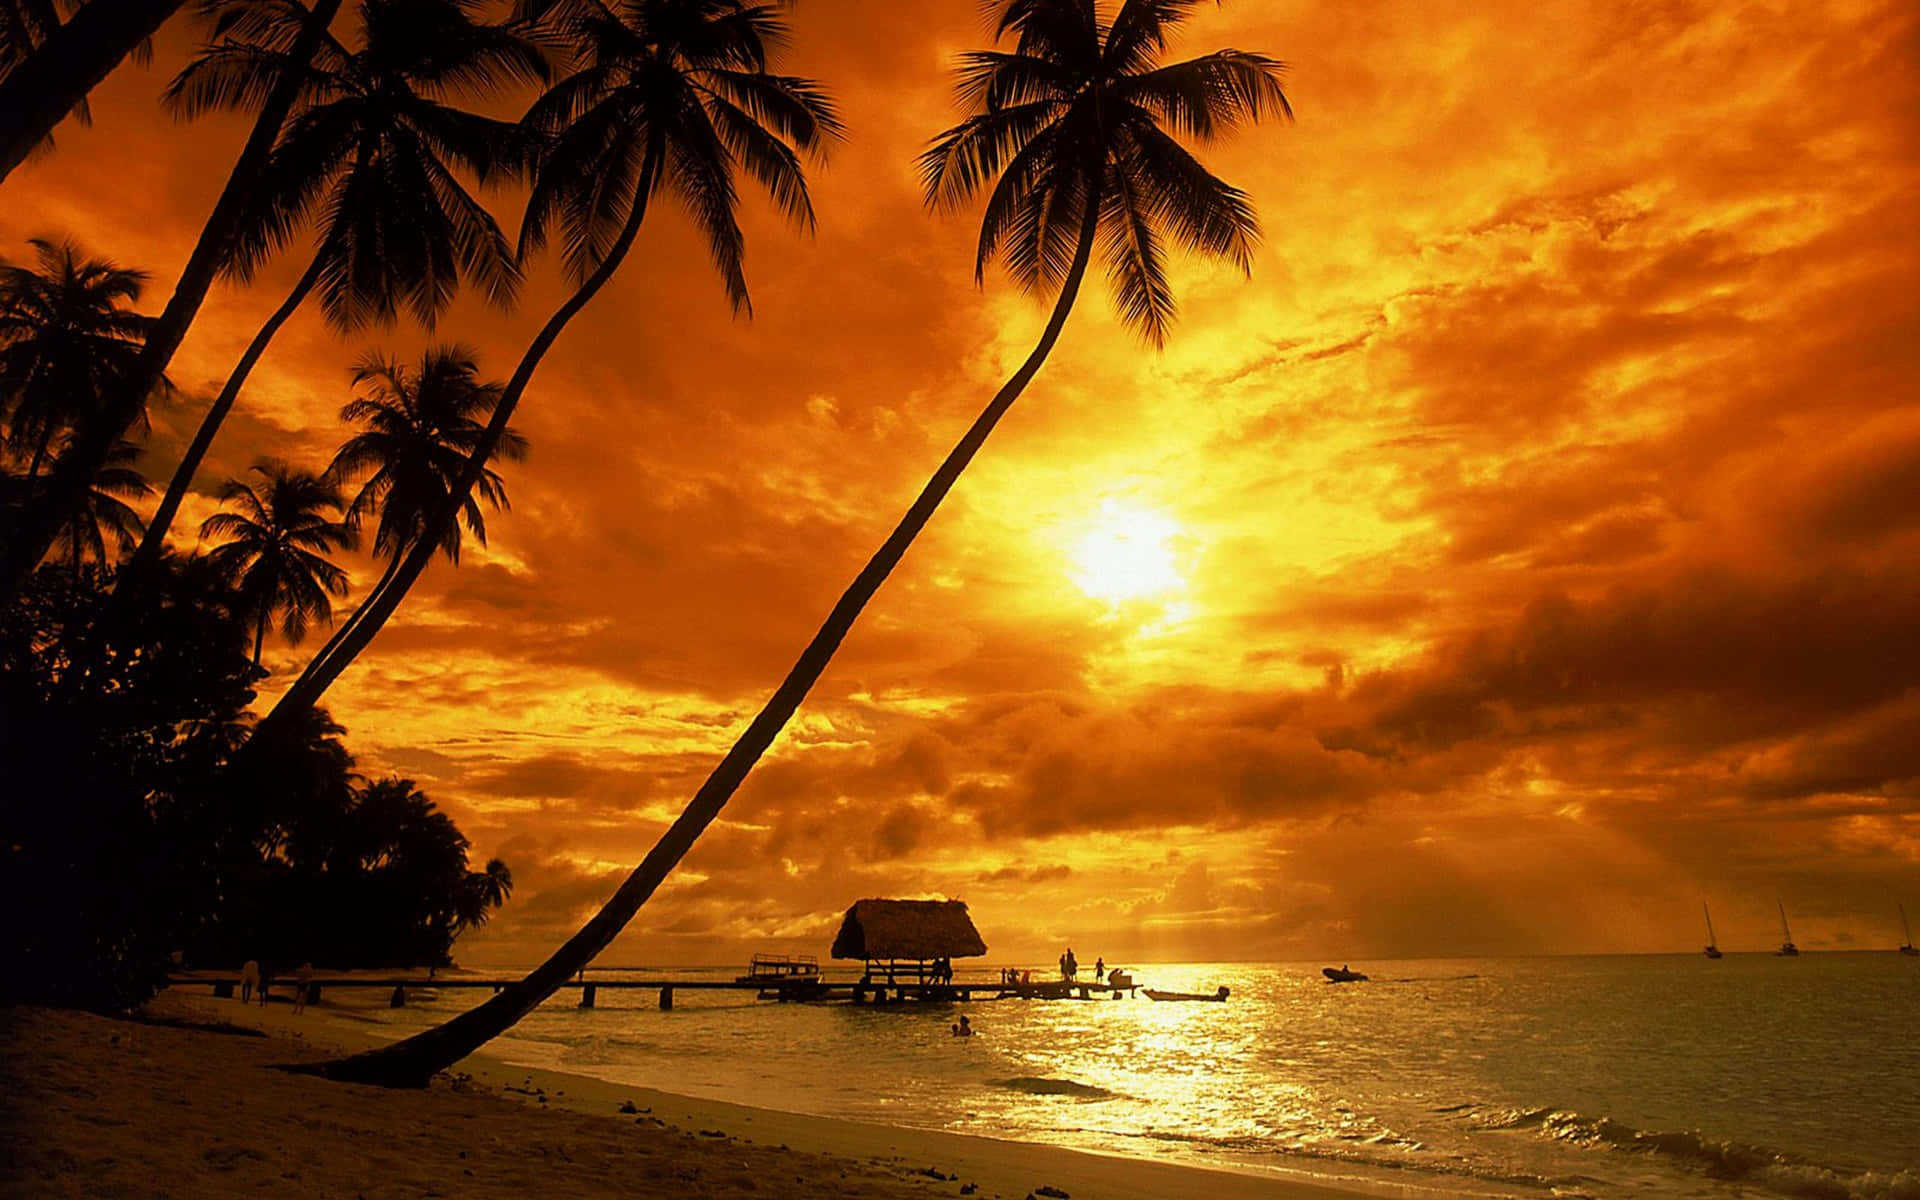 Slap af under et smukt solnedgang på stranden. Wallpaper